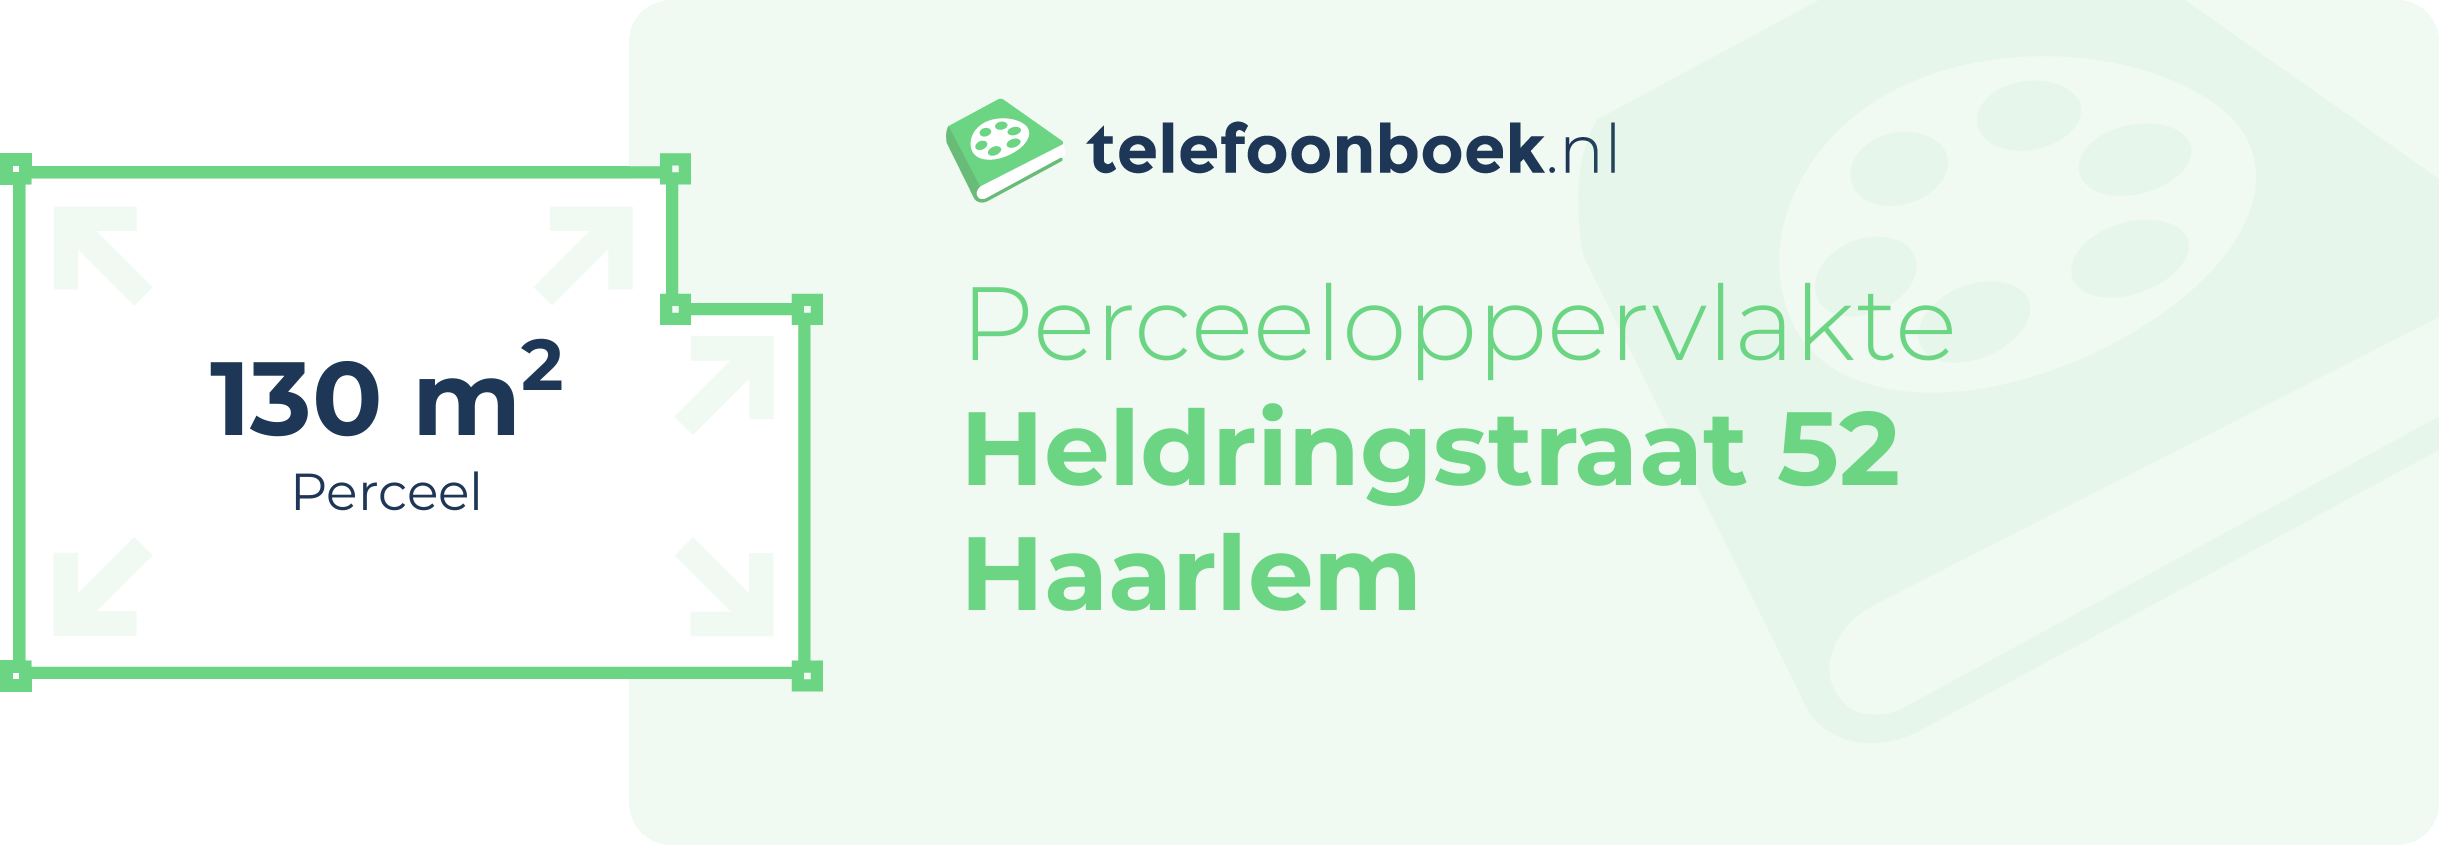 Perceeloppervlakte Heldringstraat 52 Haarlem